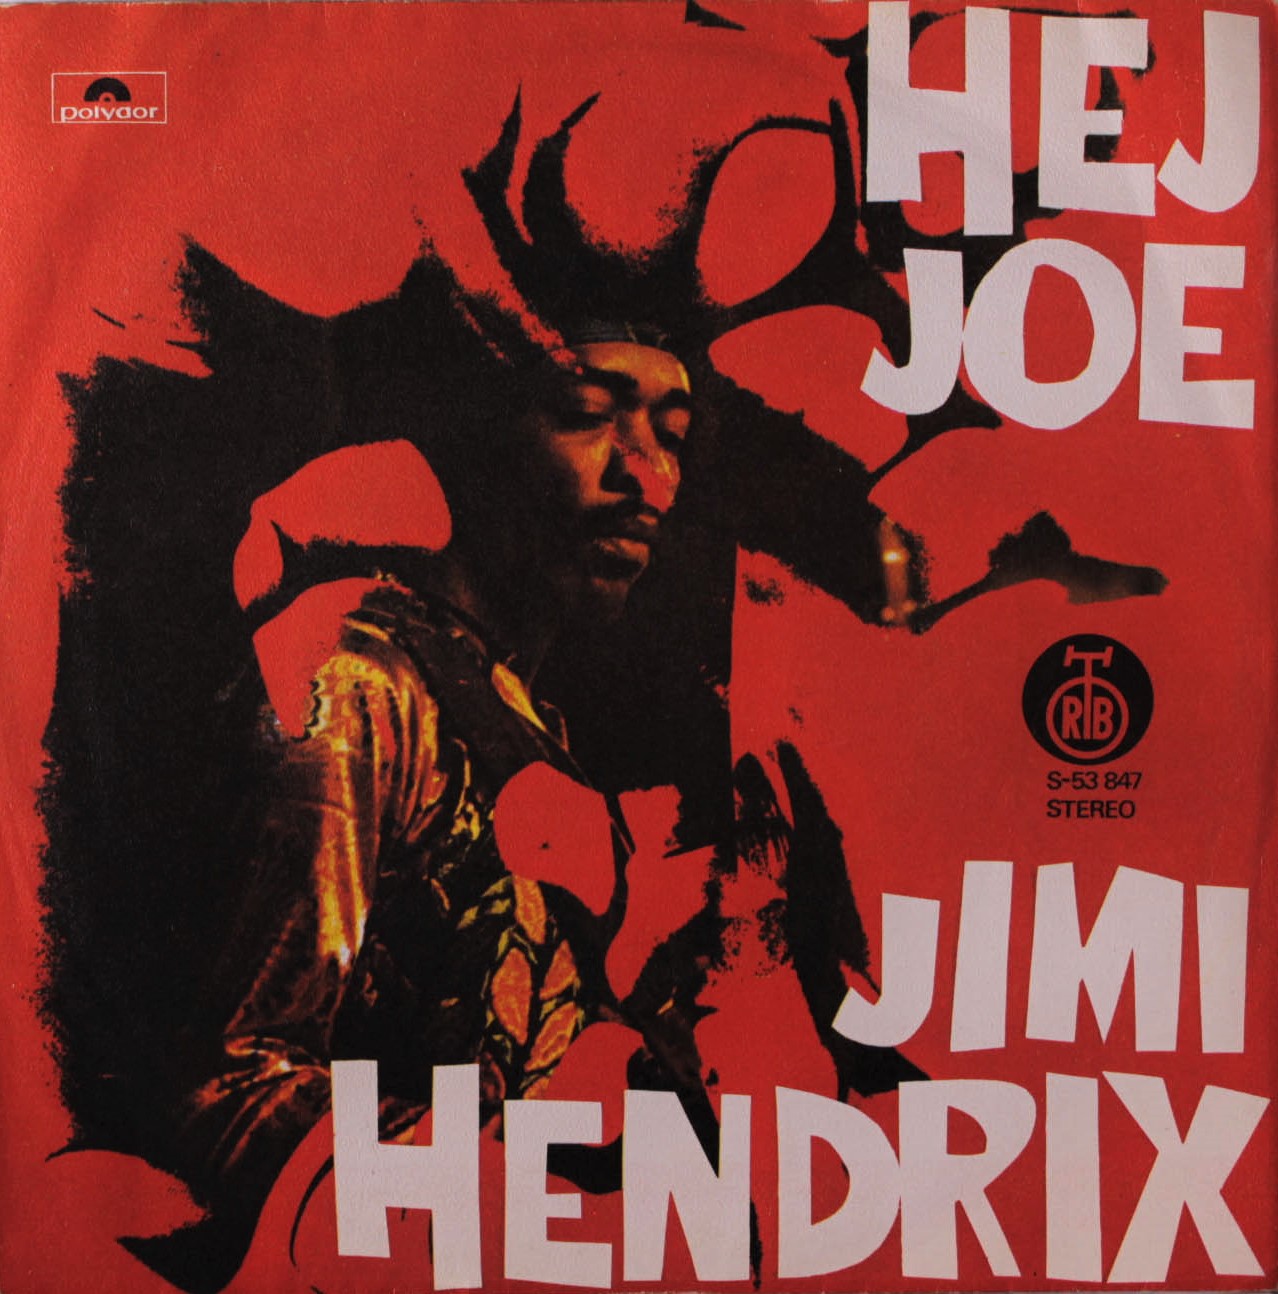 PURPLE HAZE vs HEY JOE Jimi-Hendrix-Hey-Joe-1